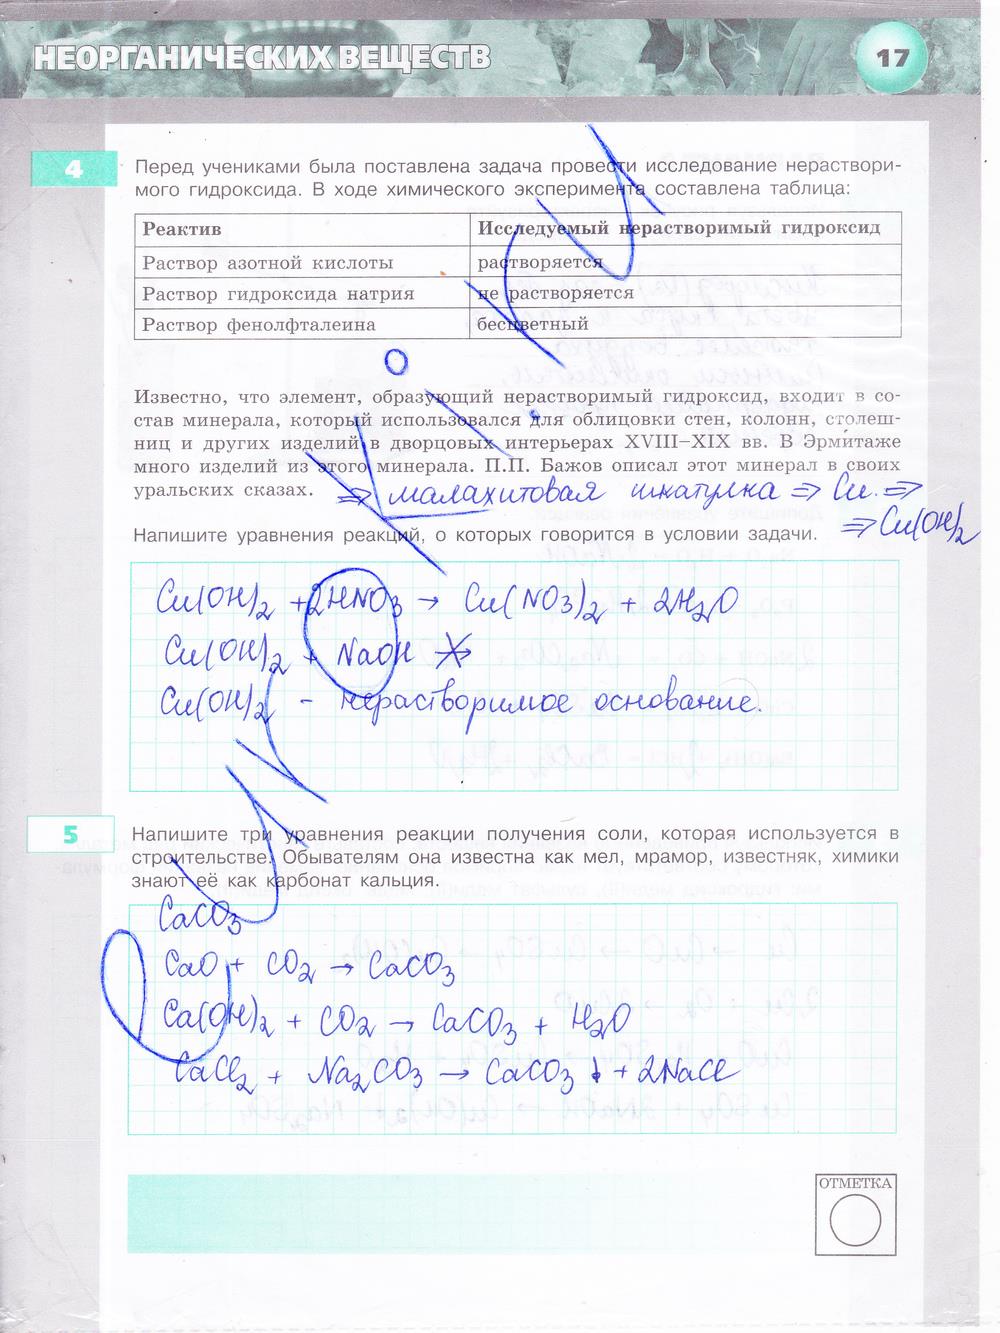 гдз 8 класс тетрадь-экзаменатор страница 17 химия Бобылева, Бирюлина